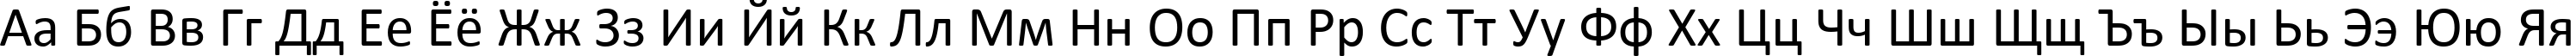 Пример написания русского алфавита шрифтом Calibri